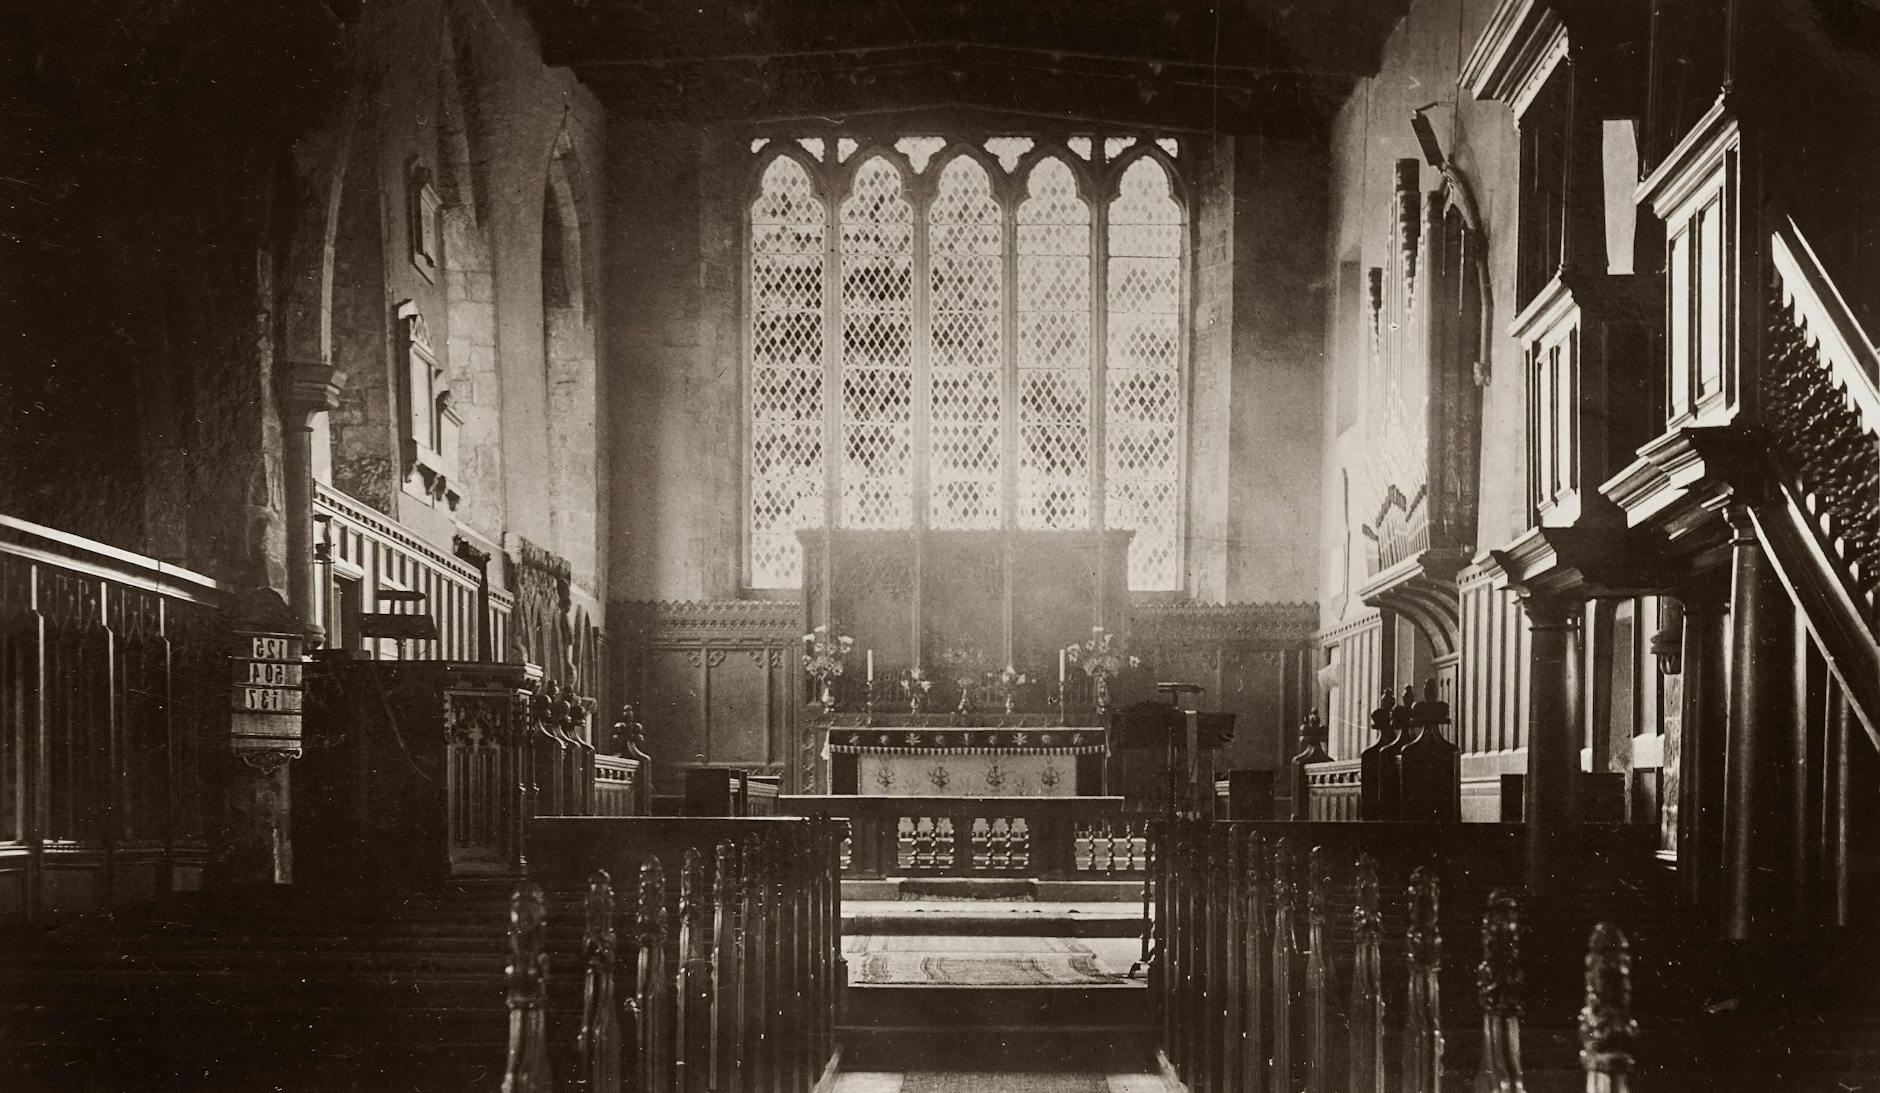 Old Photo Of An Altar Inside A Church